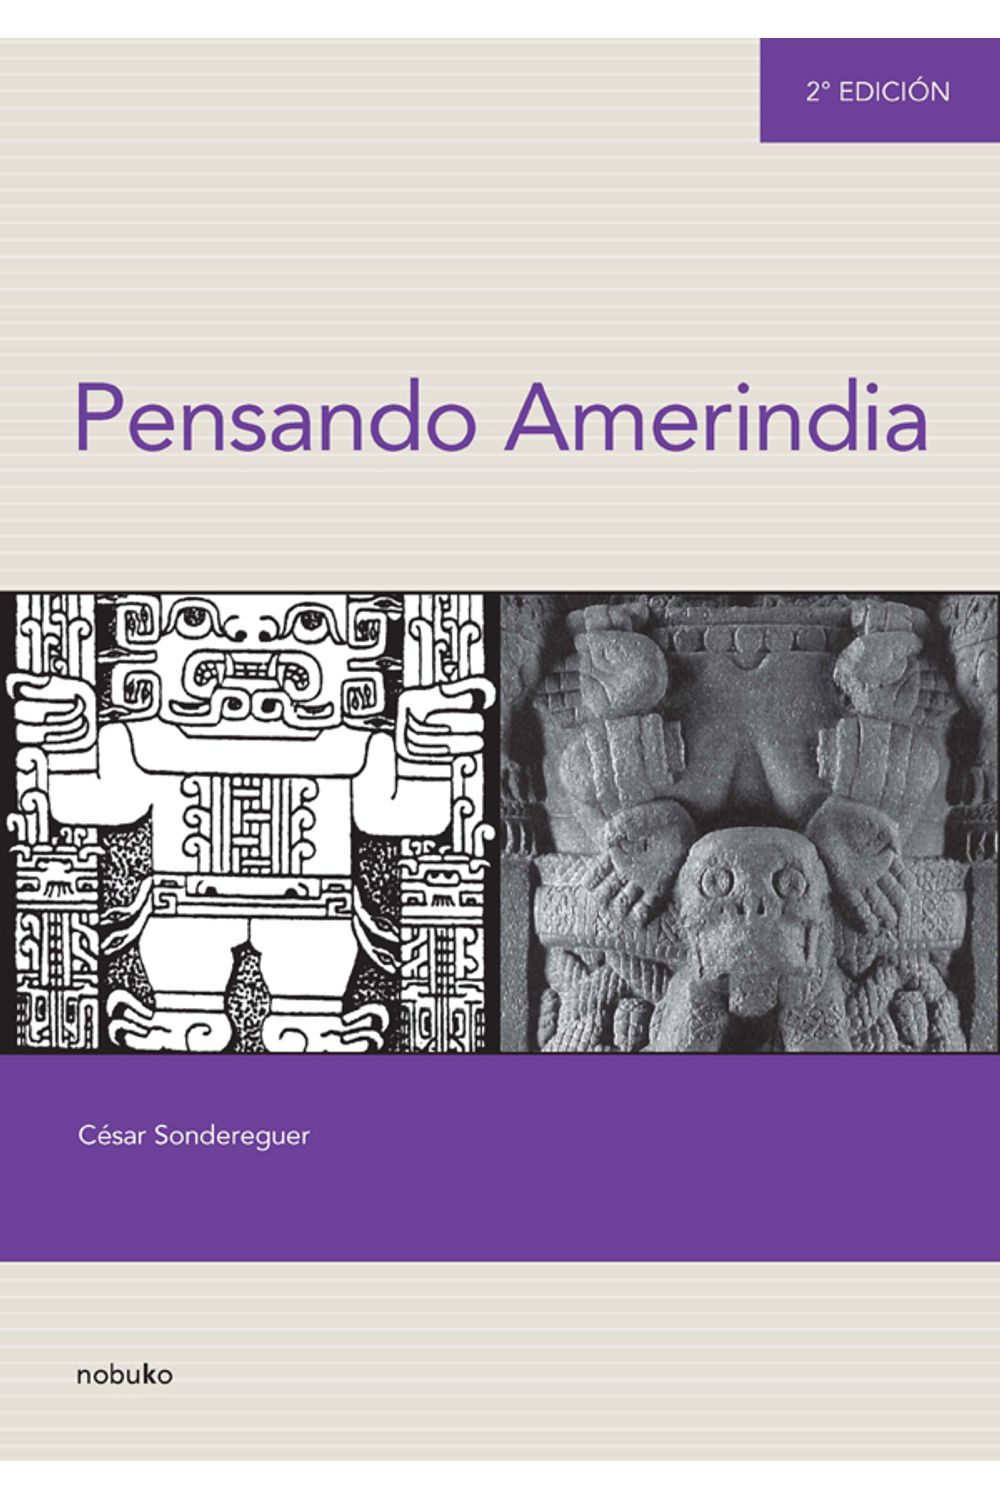 bm-pensando-amerindia-2-edicion-nobukodiseno-editorial-9789875841505